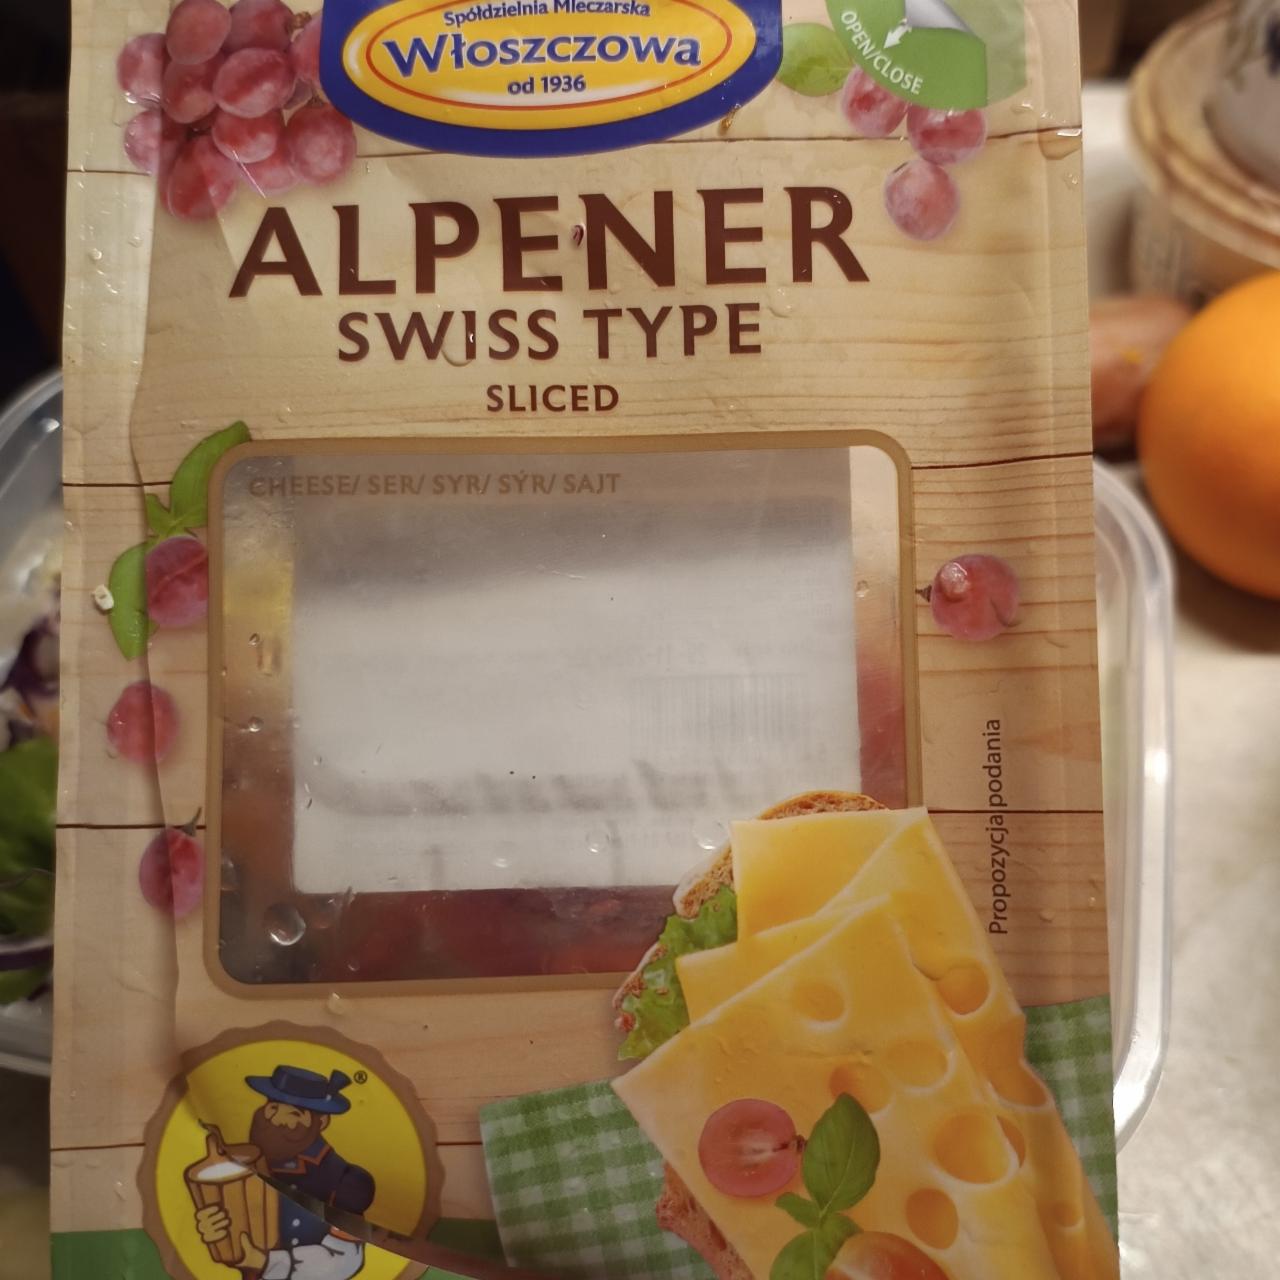 Fotografie - Alpner Swiss type sliced Wloszczowa